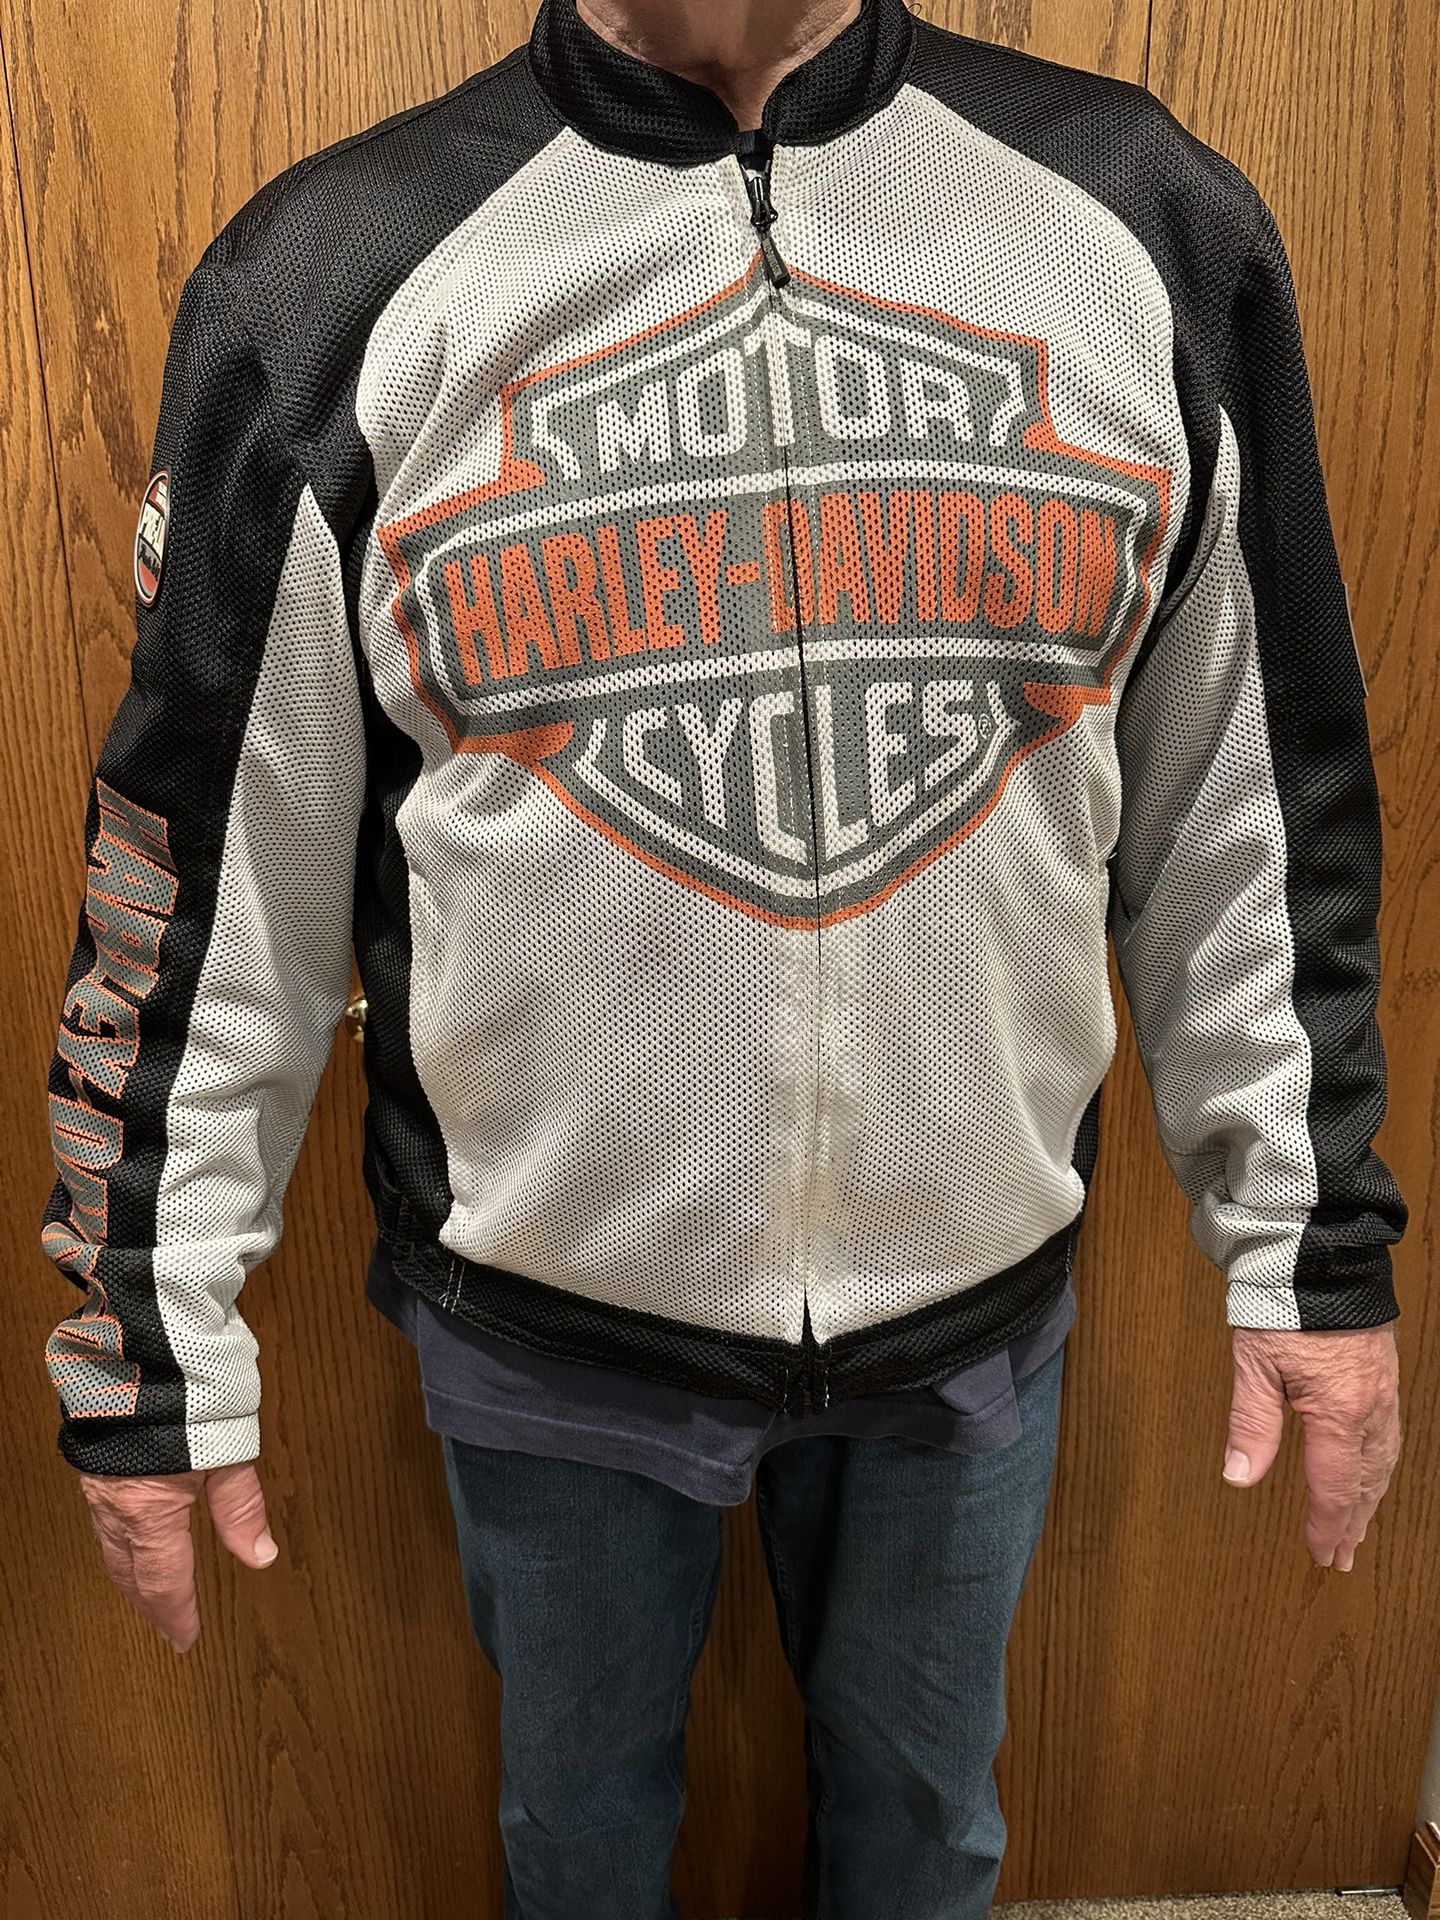 Harley Davidson Men’s White Mesh Riding Jacket